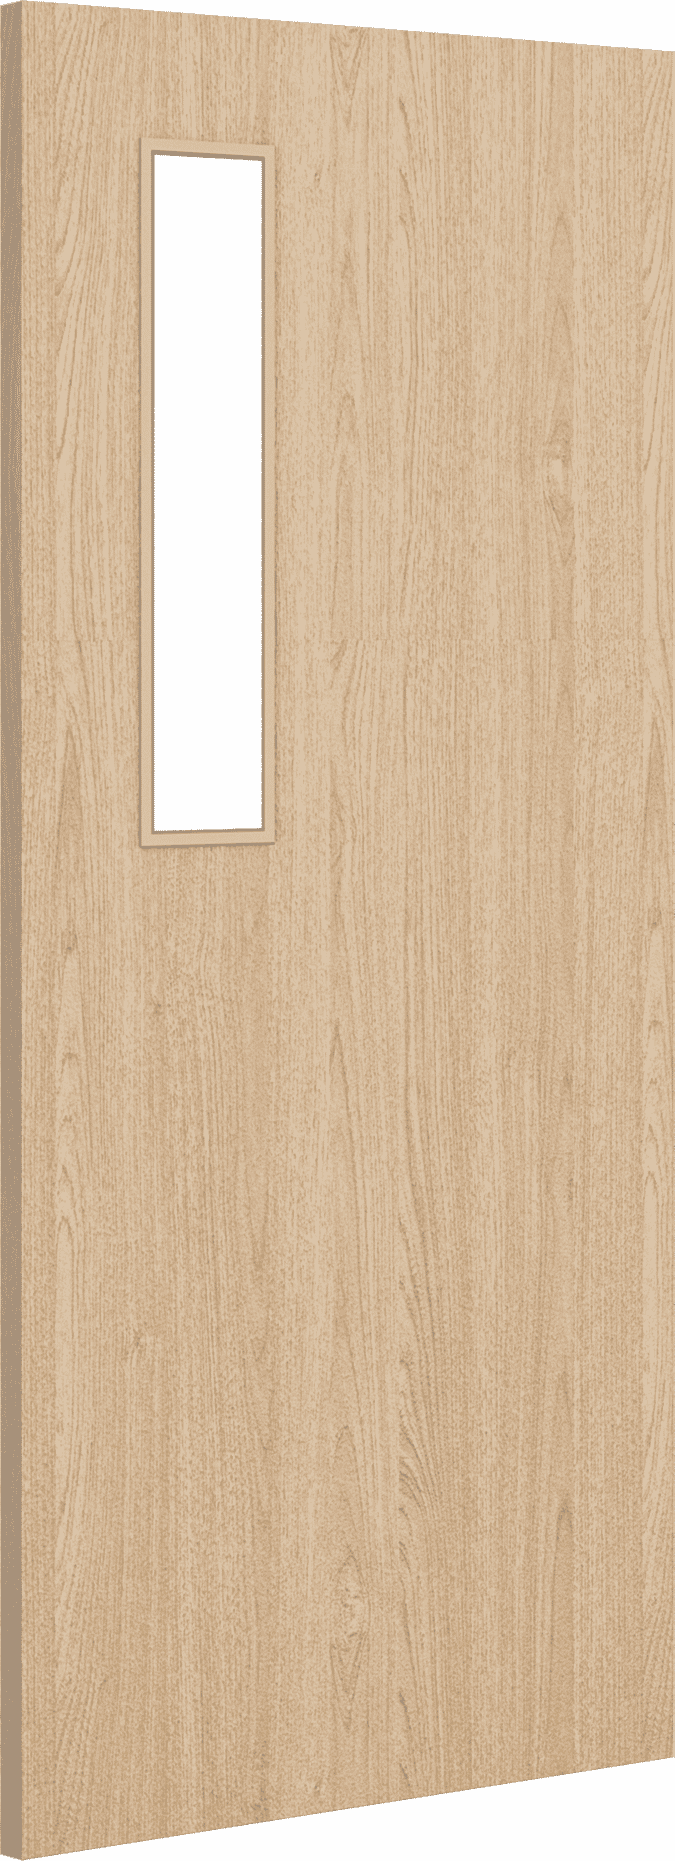 2040mm x 826mm x 44mm Architectural Oak 08 Clear Glazed - Prefinished FD30 Fire Door Blank